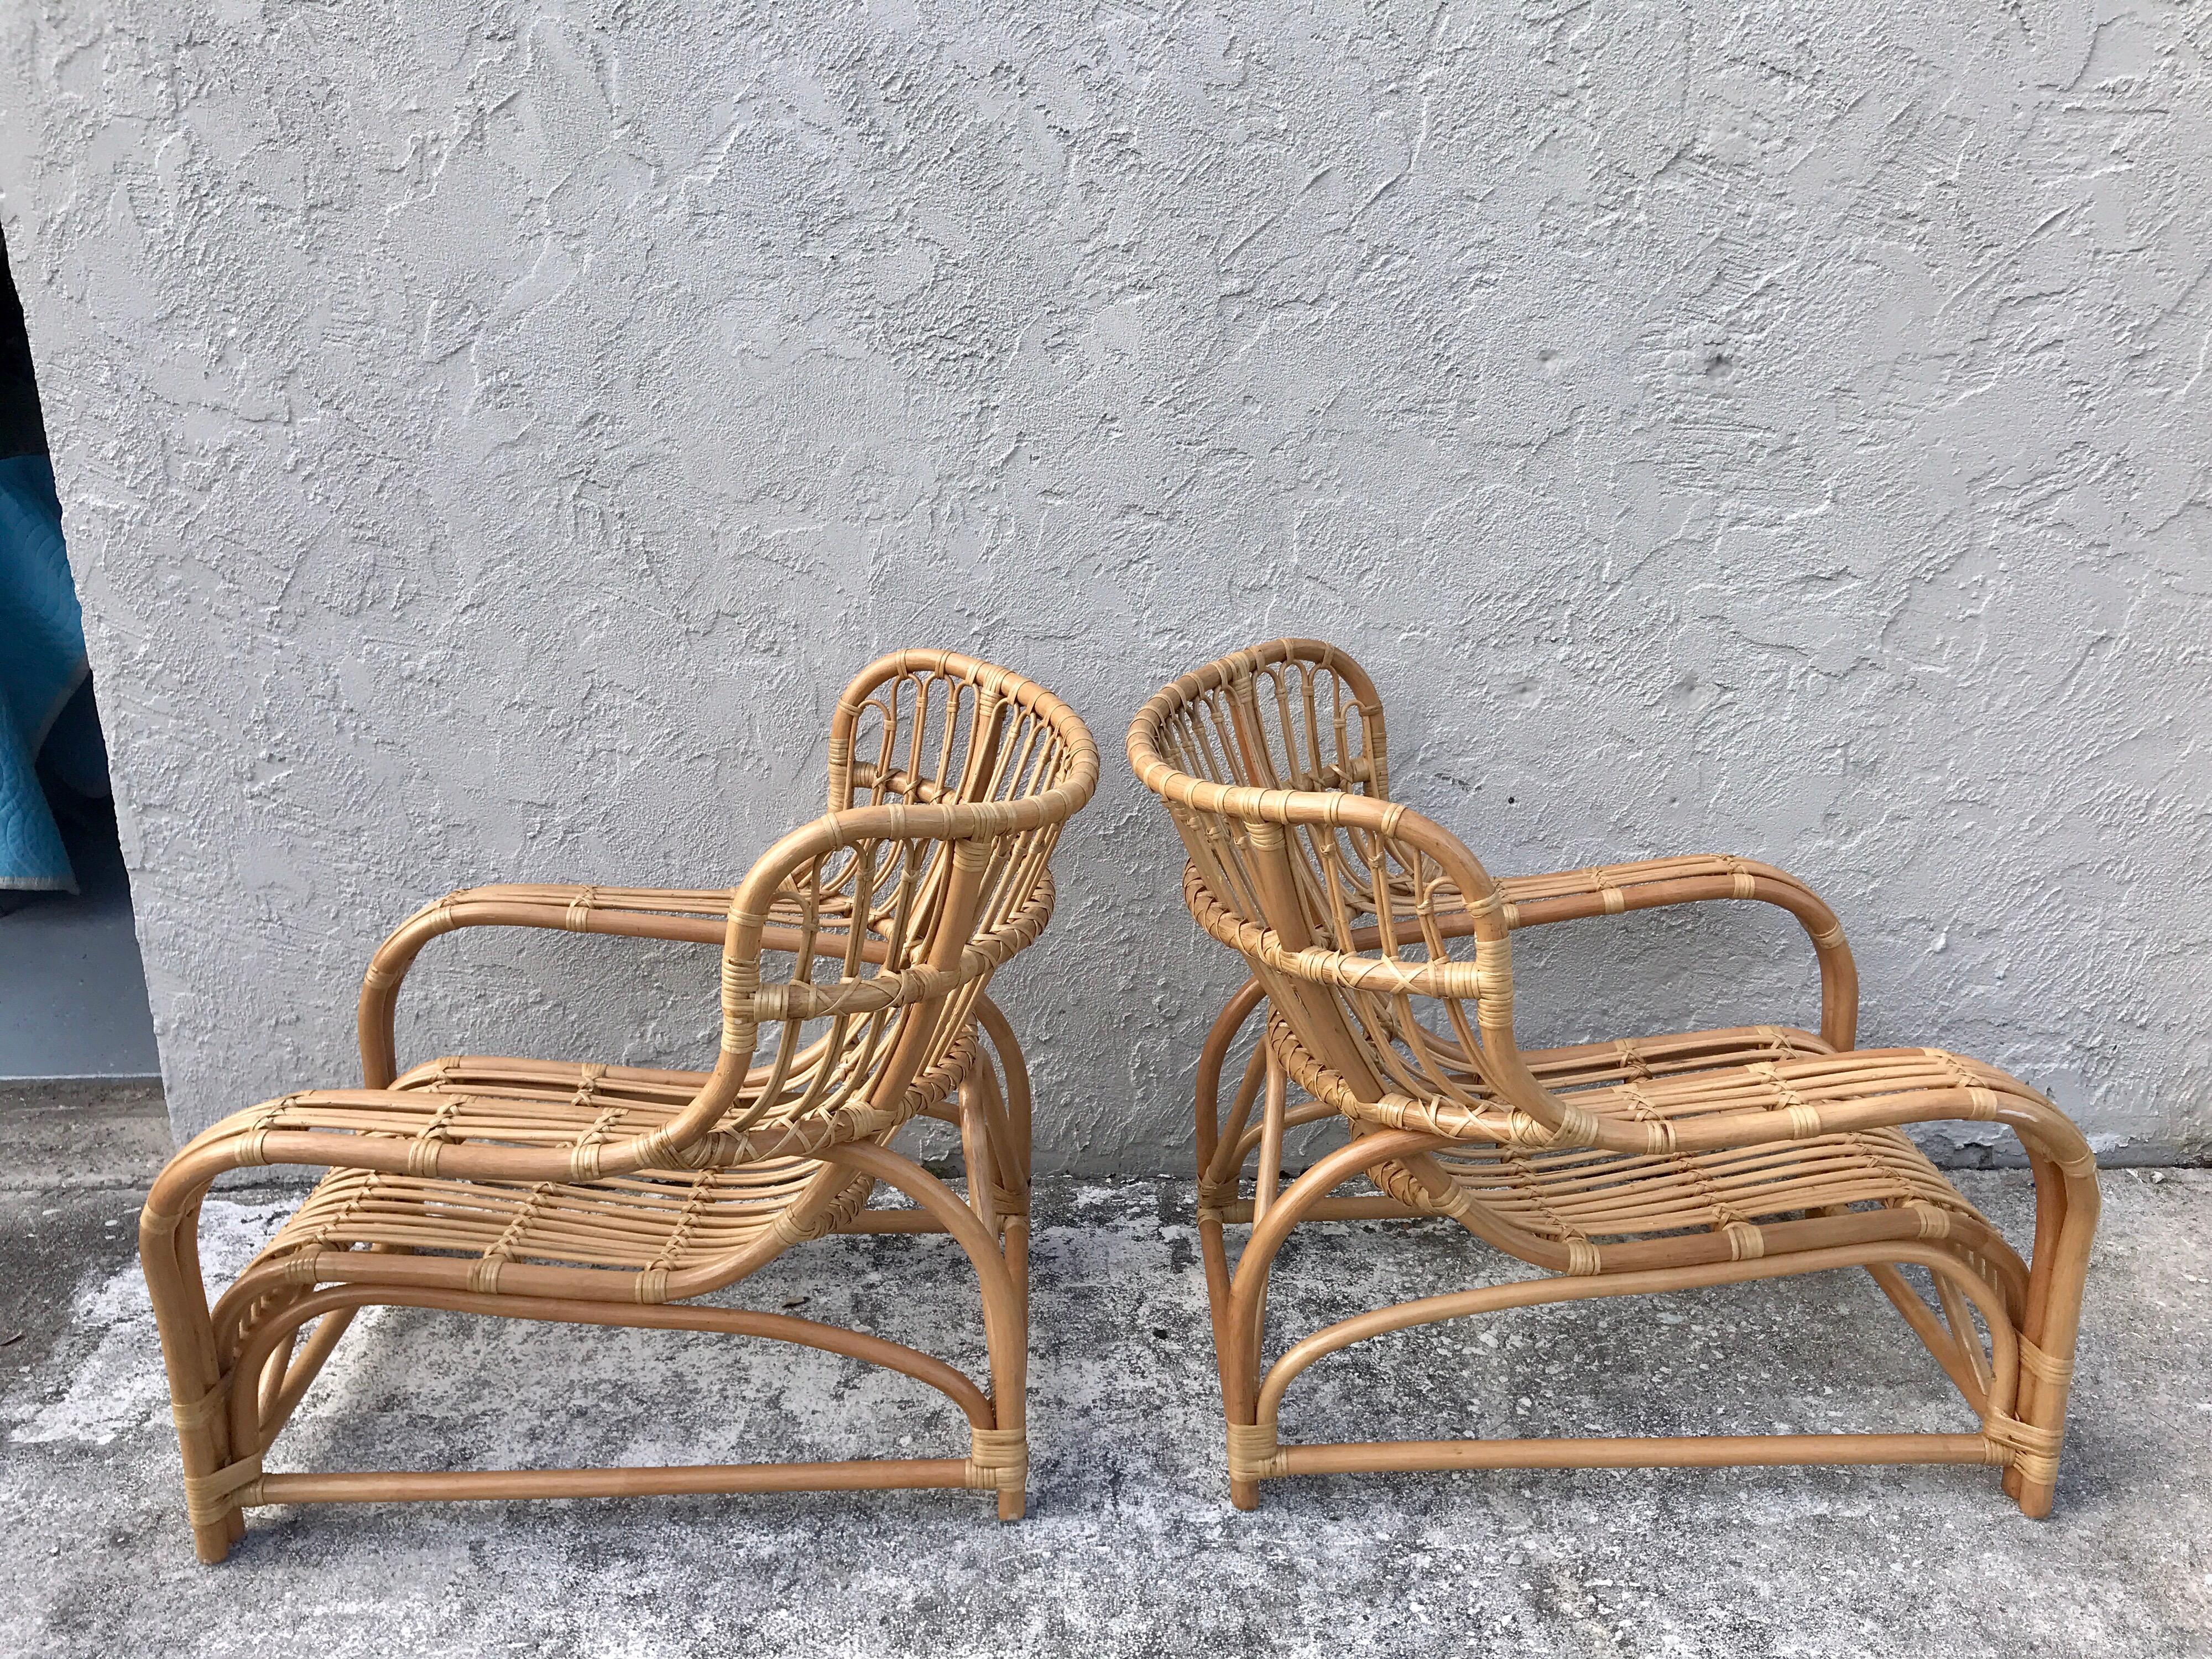 Pair of midcentury rattan scoop chairs, restored
Measures: 26